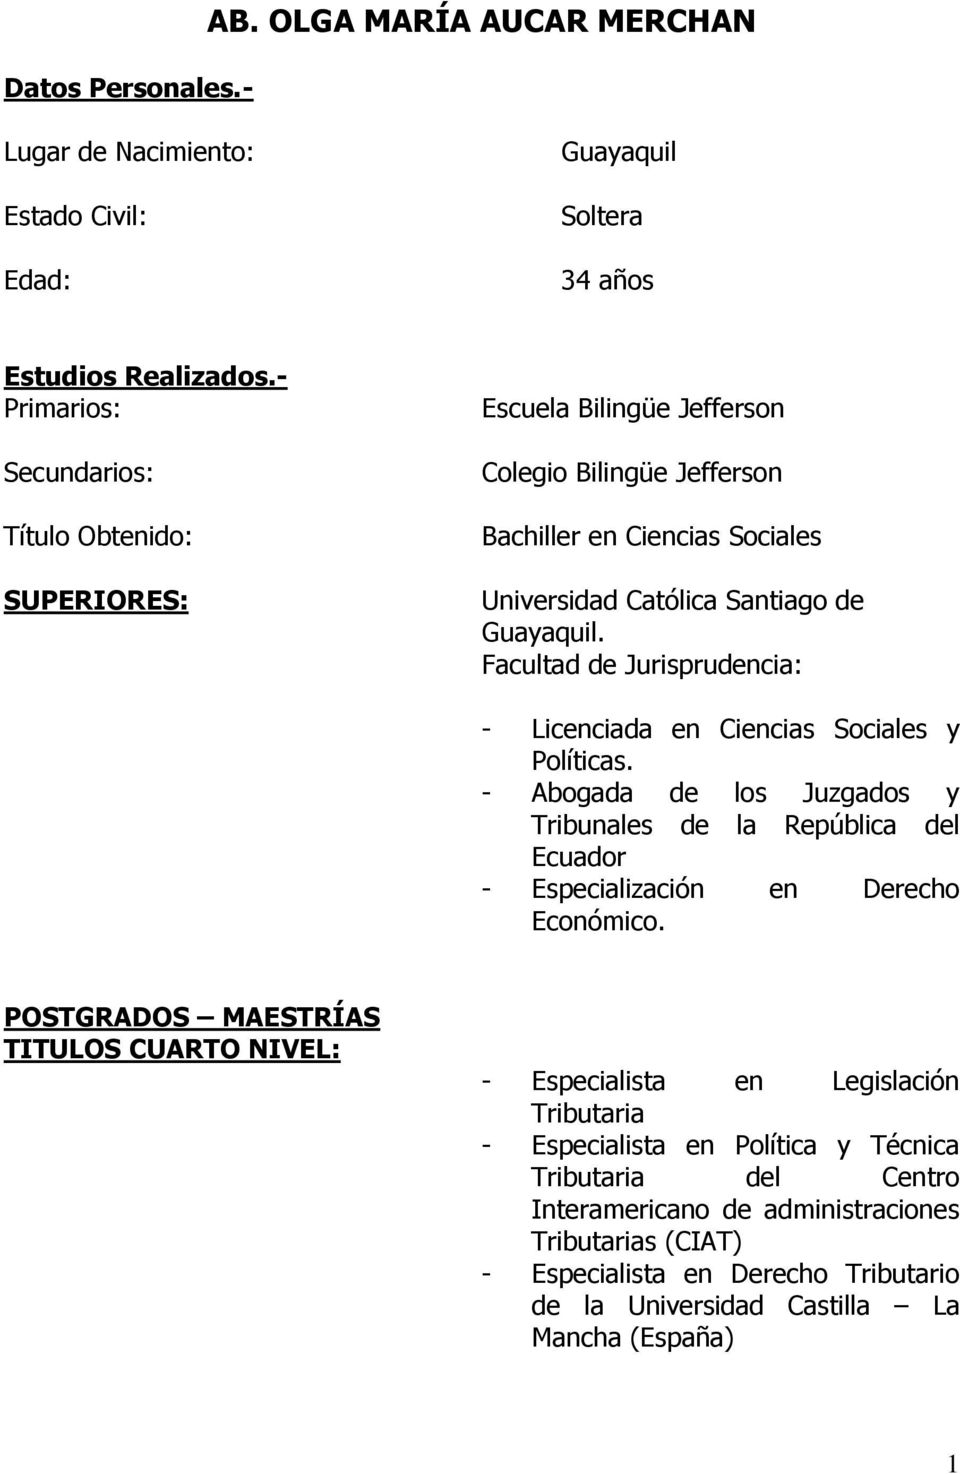 Facultad de Jurisprudencia: - Licenciada en Ciencias Sociales y Políticas. - Abogada de los Juzgados y Tribunales de la República del Ecuador - Especialización en Derecho Económico.